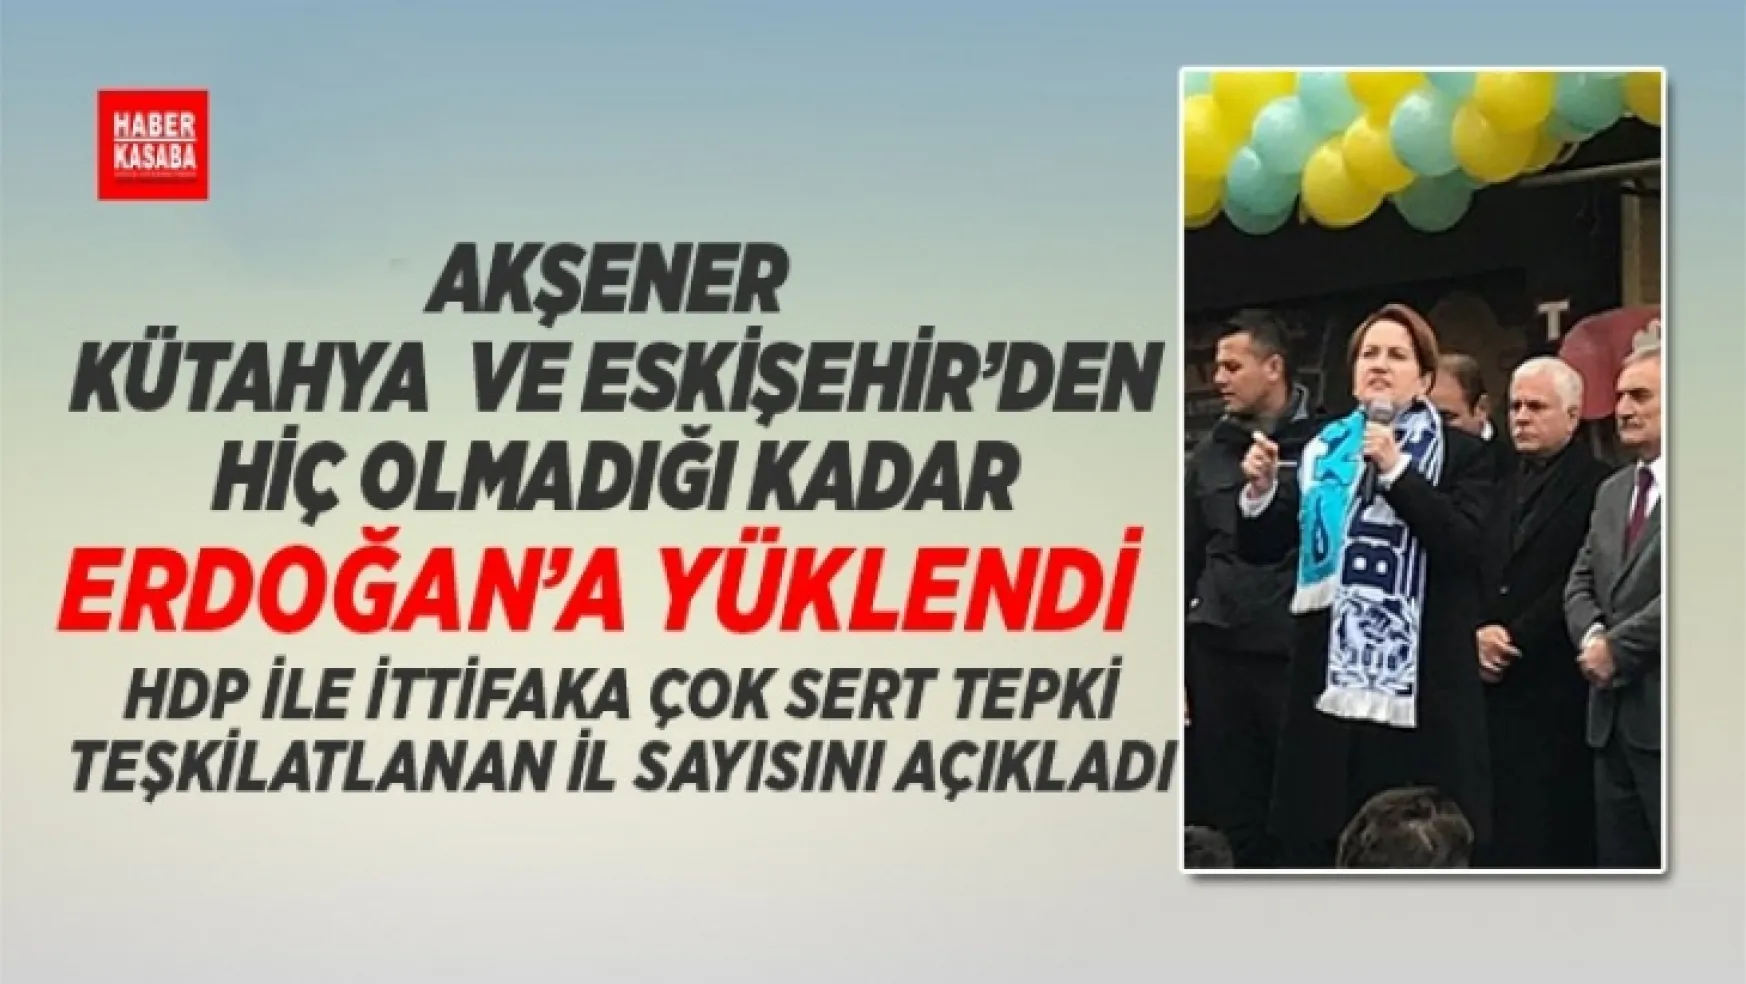 Akşener Kütahya ve Eskişehir'den hiç olmadığı kadar Erdoğan'ı Eleştirdi